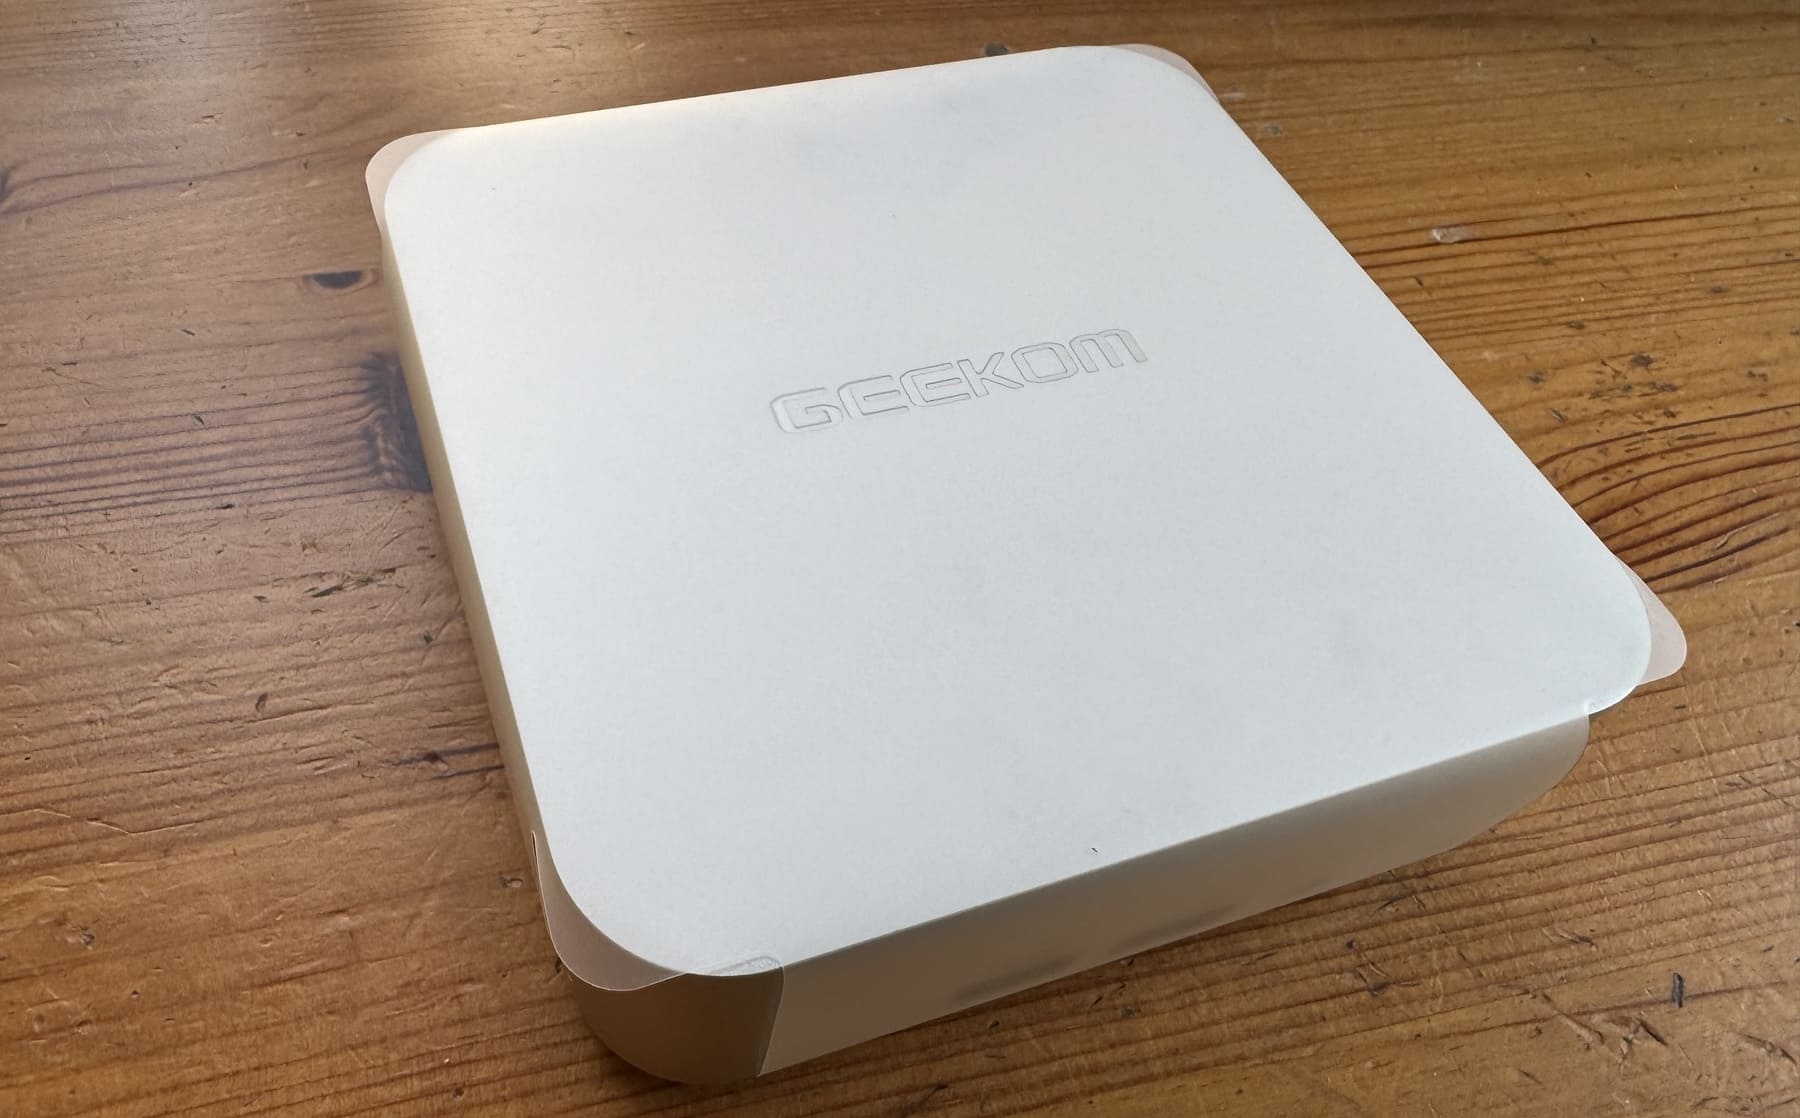 El GEEKOM A7 es el mini PC ideal ante cualquier escenario